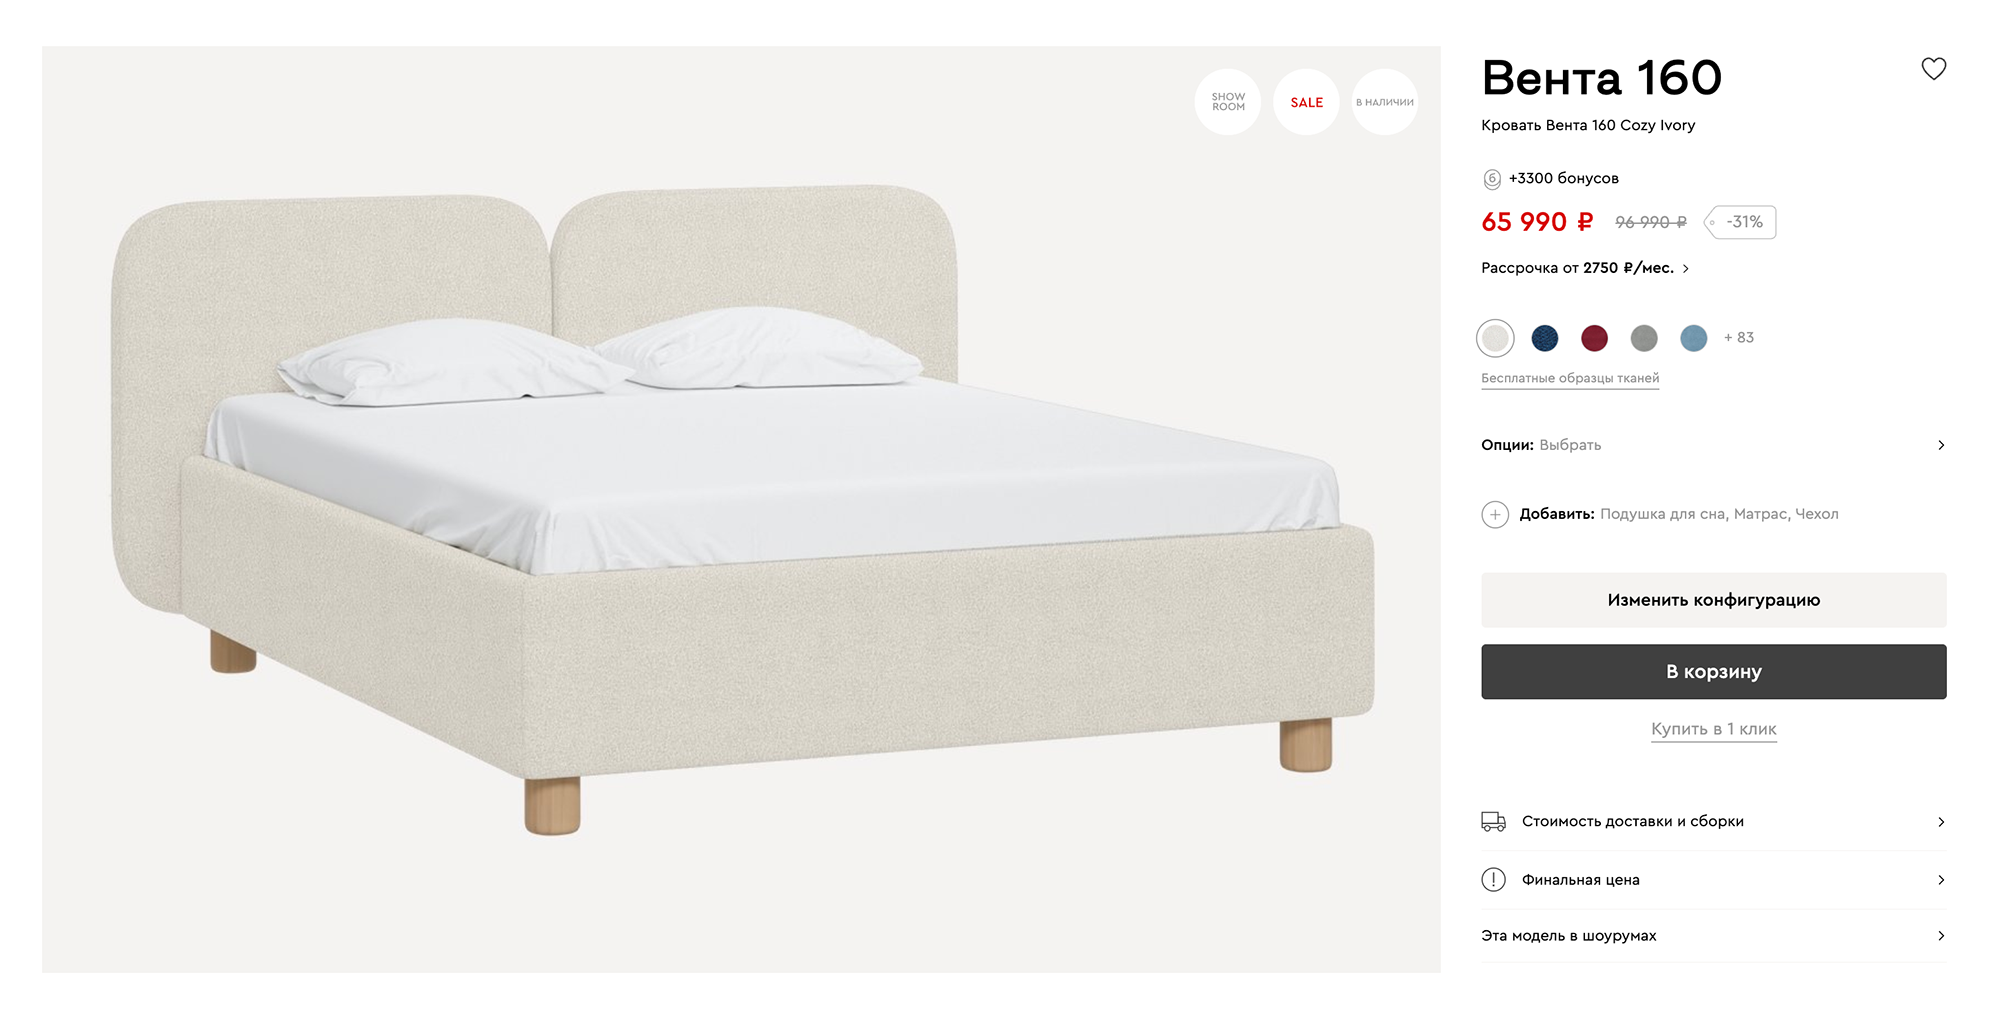 Кровать тоже можно выбрать мягкую, с округлым изголовьем. Источник: divan.ru